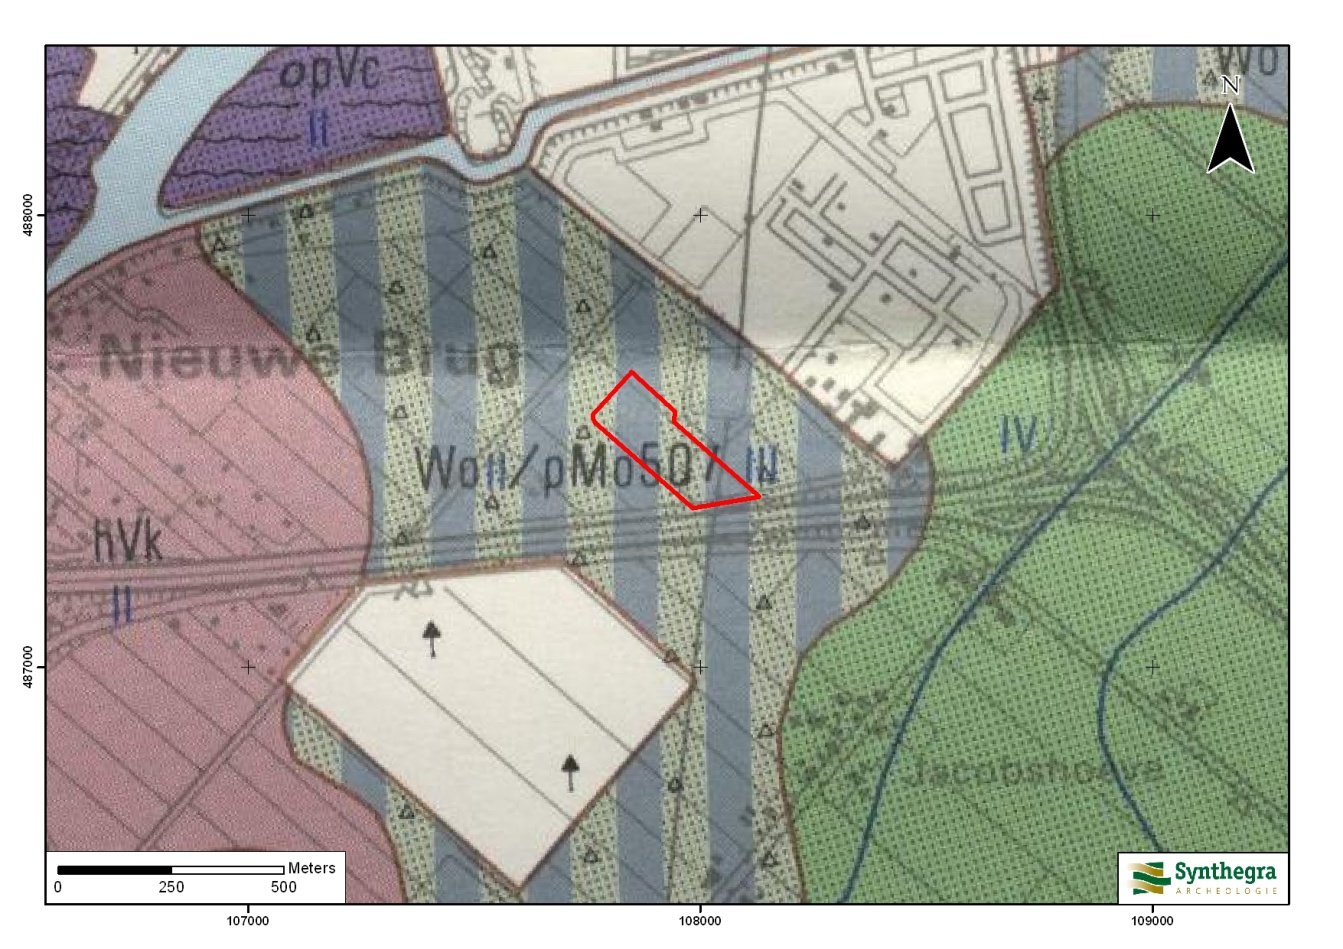 Bodem Op de Bodemkaart van Nederland schaal 1:50.000 staat aangegeven dat binnen het plangebied twee bodemtypen kunnen voorkomen.